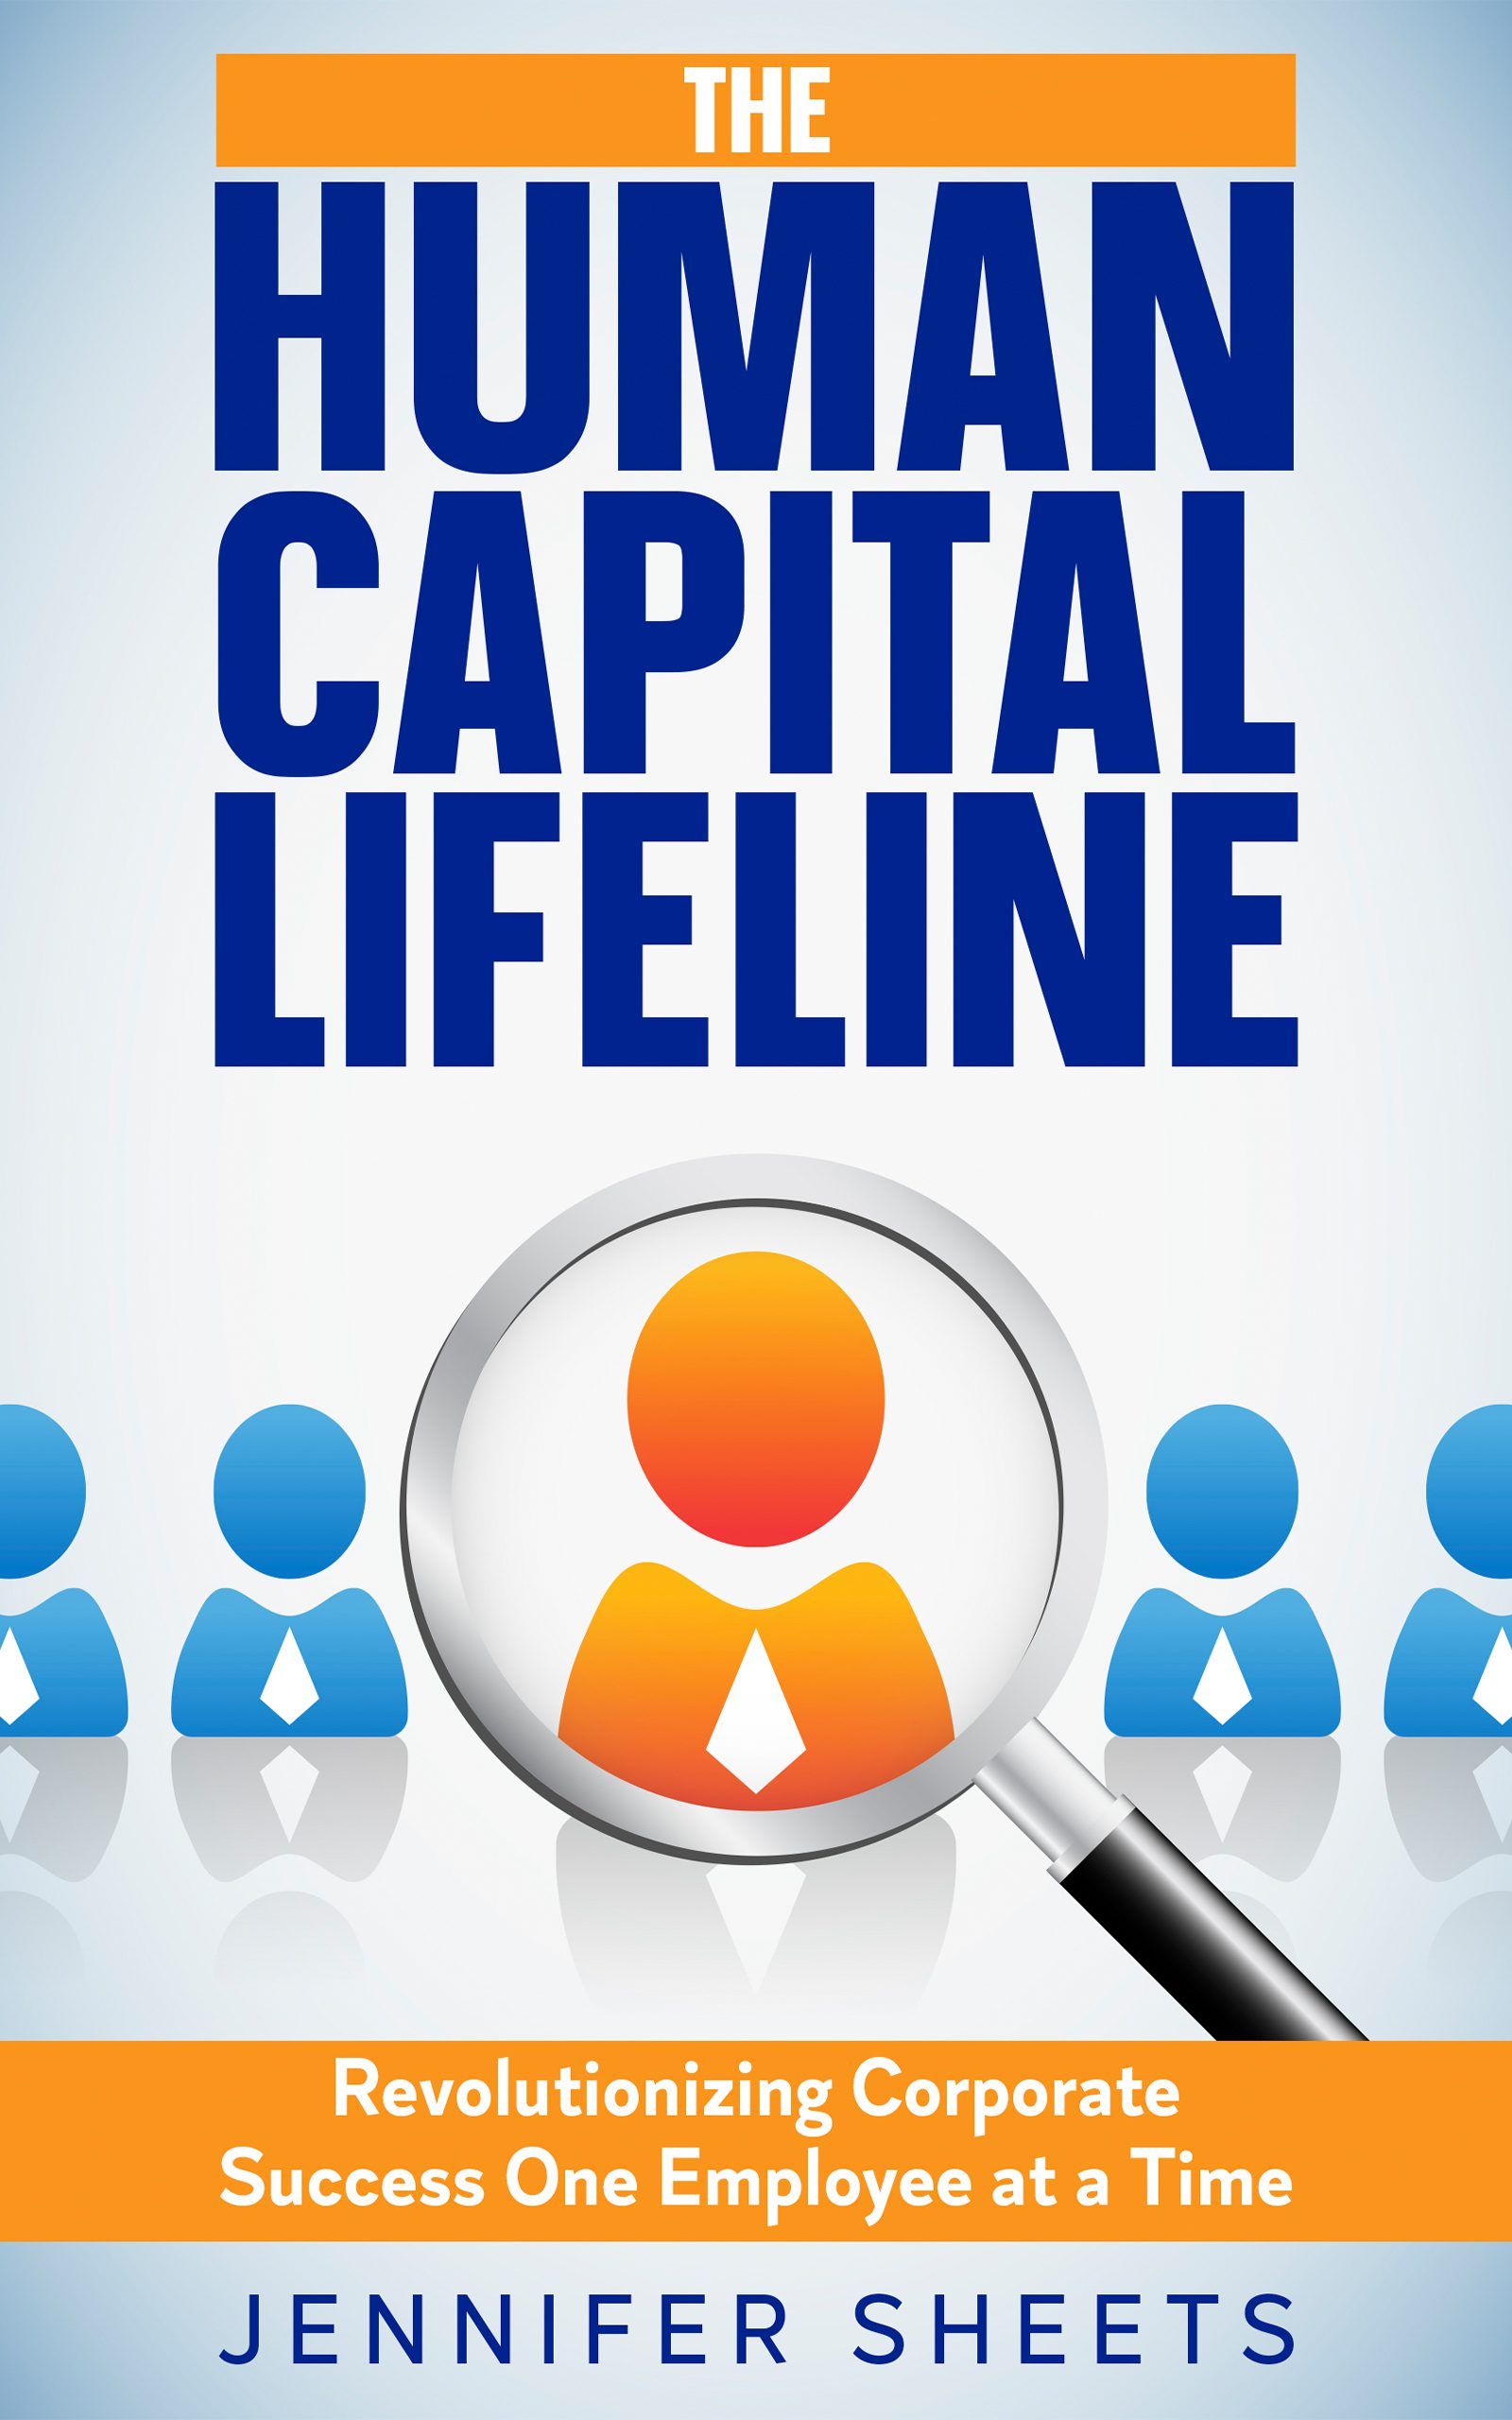 Human Capital Lifeline